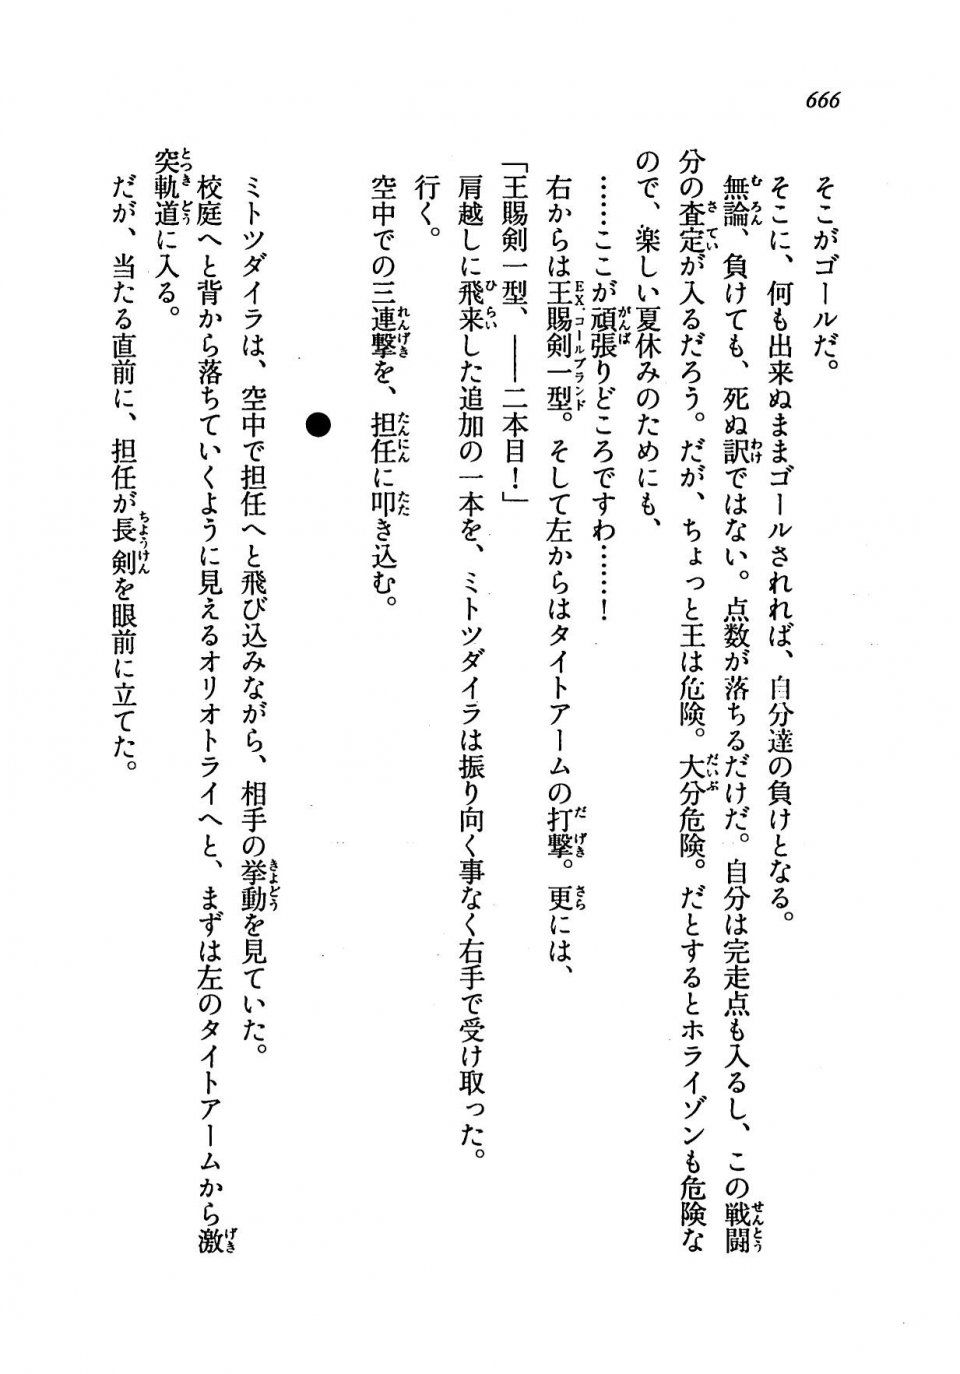 Kyoukai Senjou no Horizon LN Vol 19(8A) - Photo #666